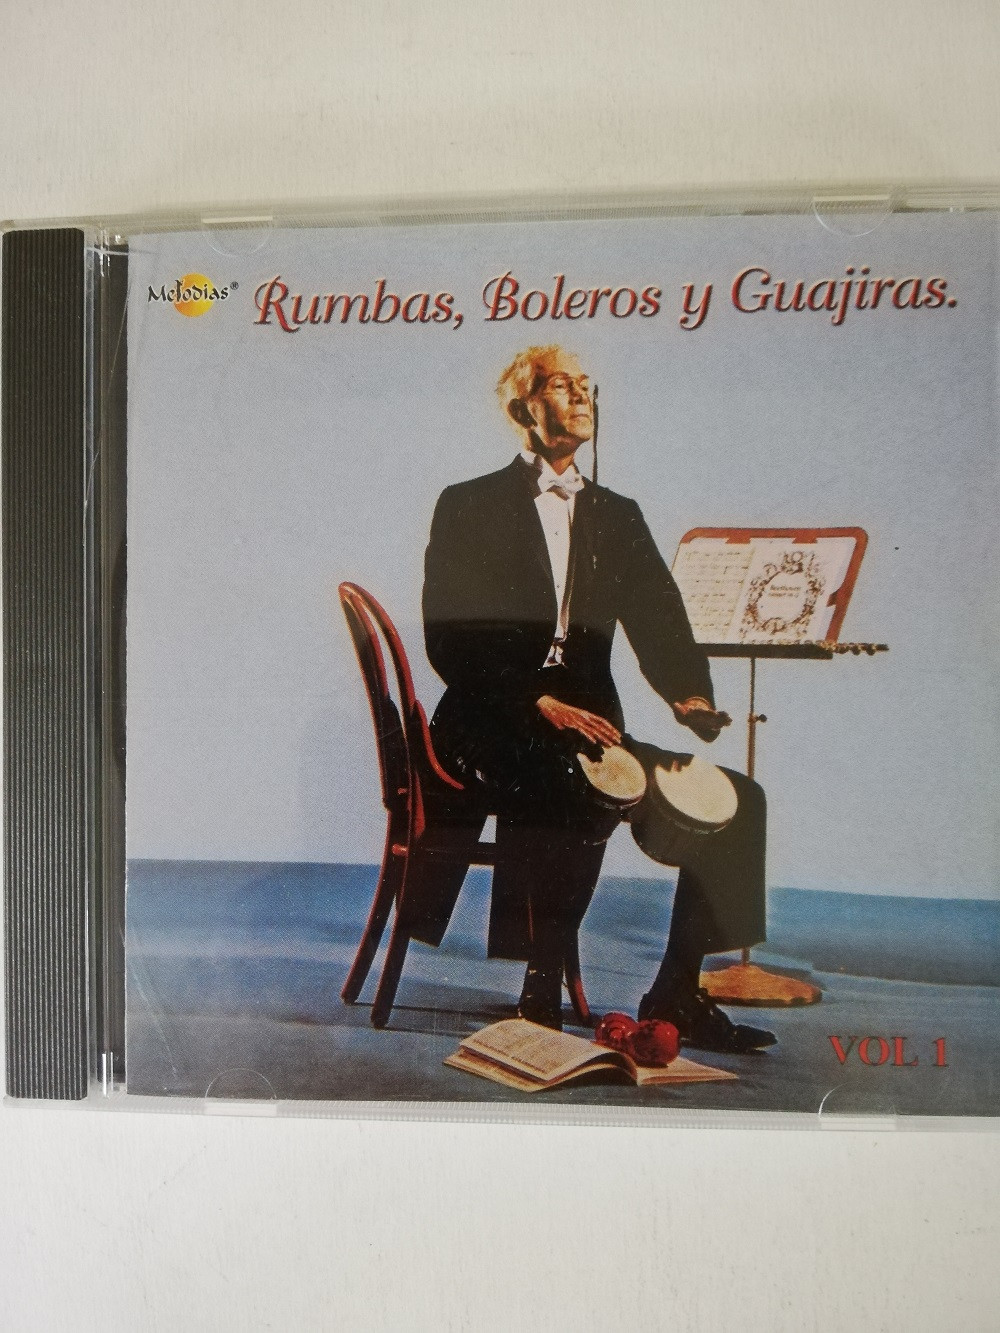 Imagen CD RUMBAS, BOLEROS Y GUAJIRAS - RUMBAS, BOLEROS Y GUAJIRAS VOL. 1